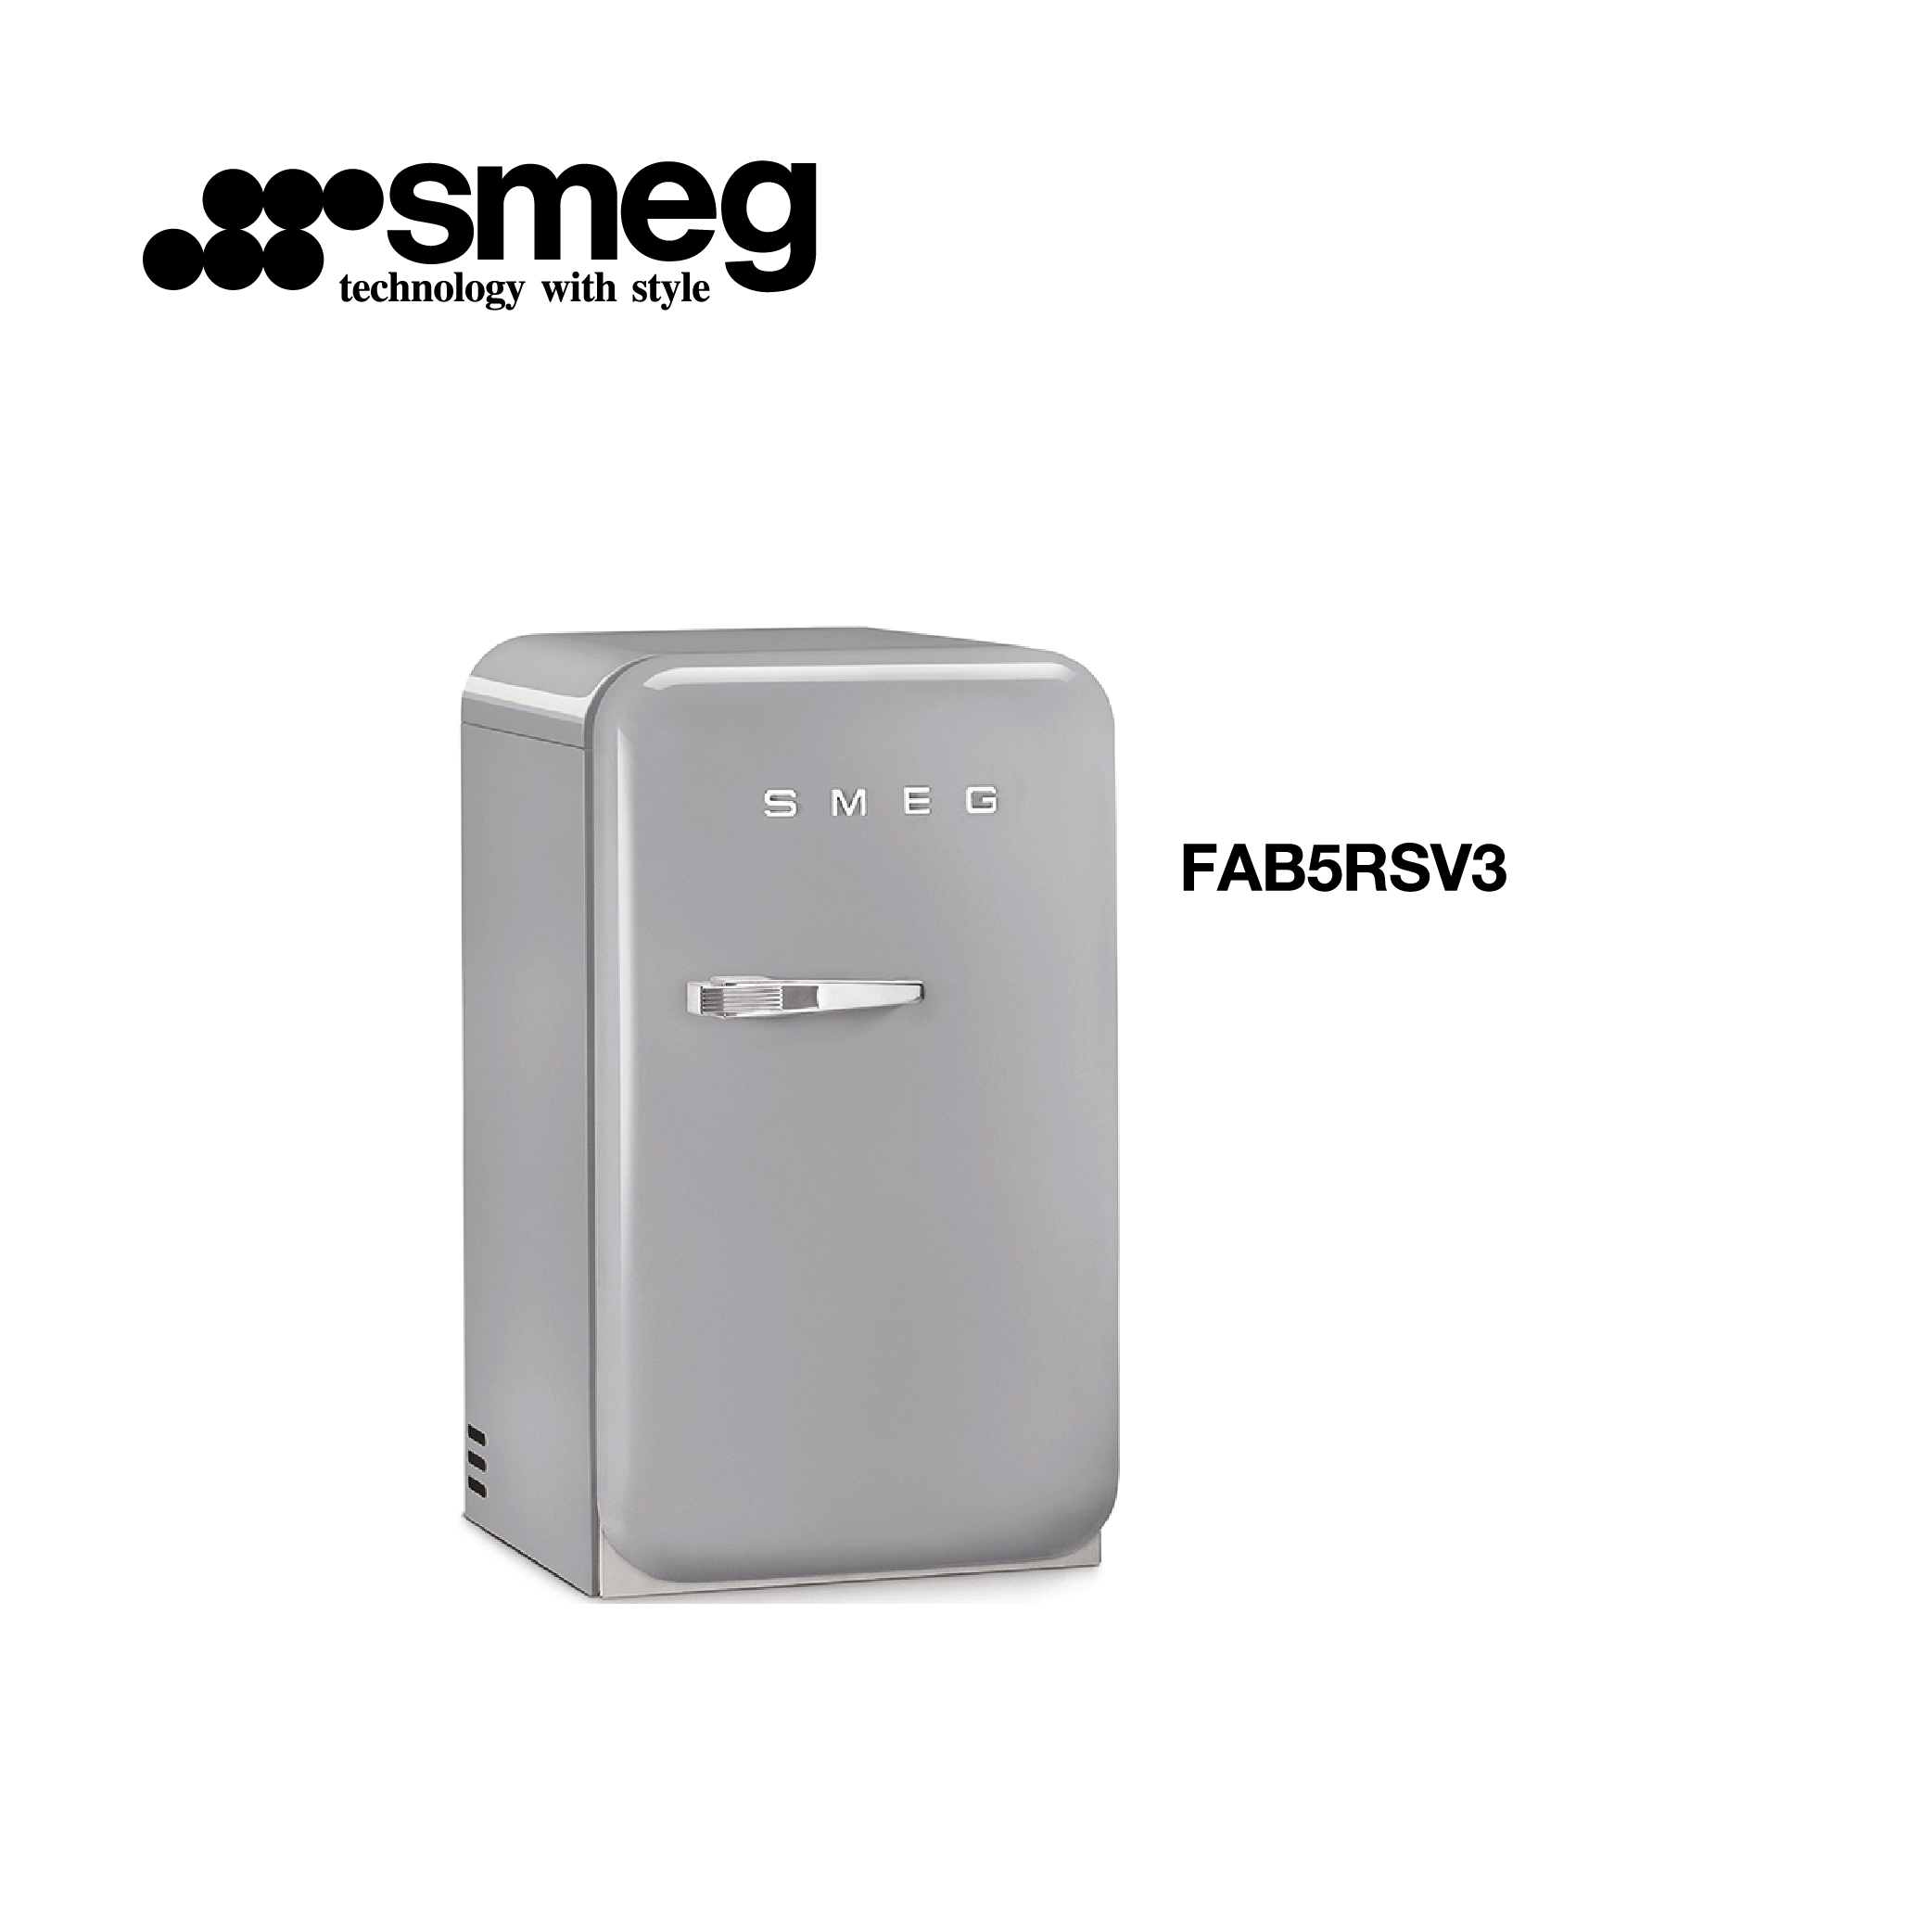 minibar refrigerateur congelateur couleur gris style vintage FAB5RSV3